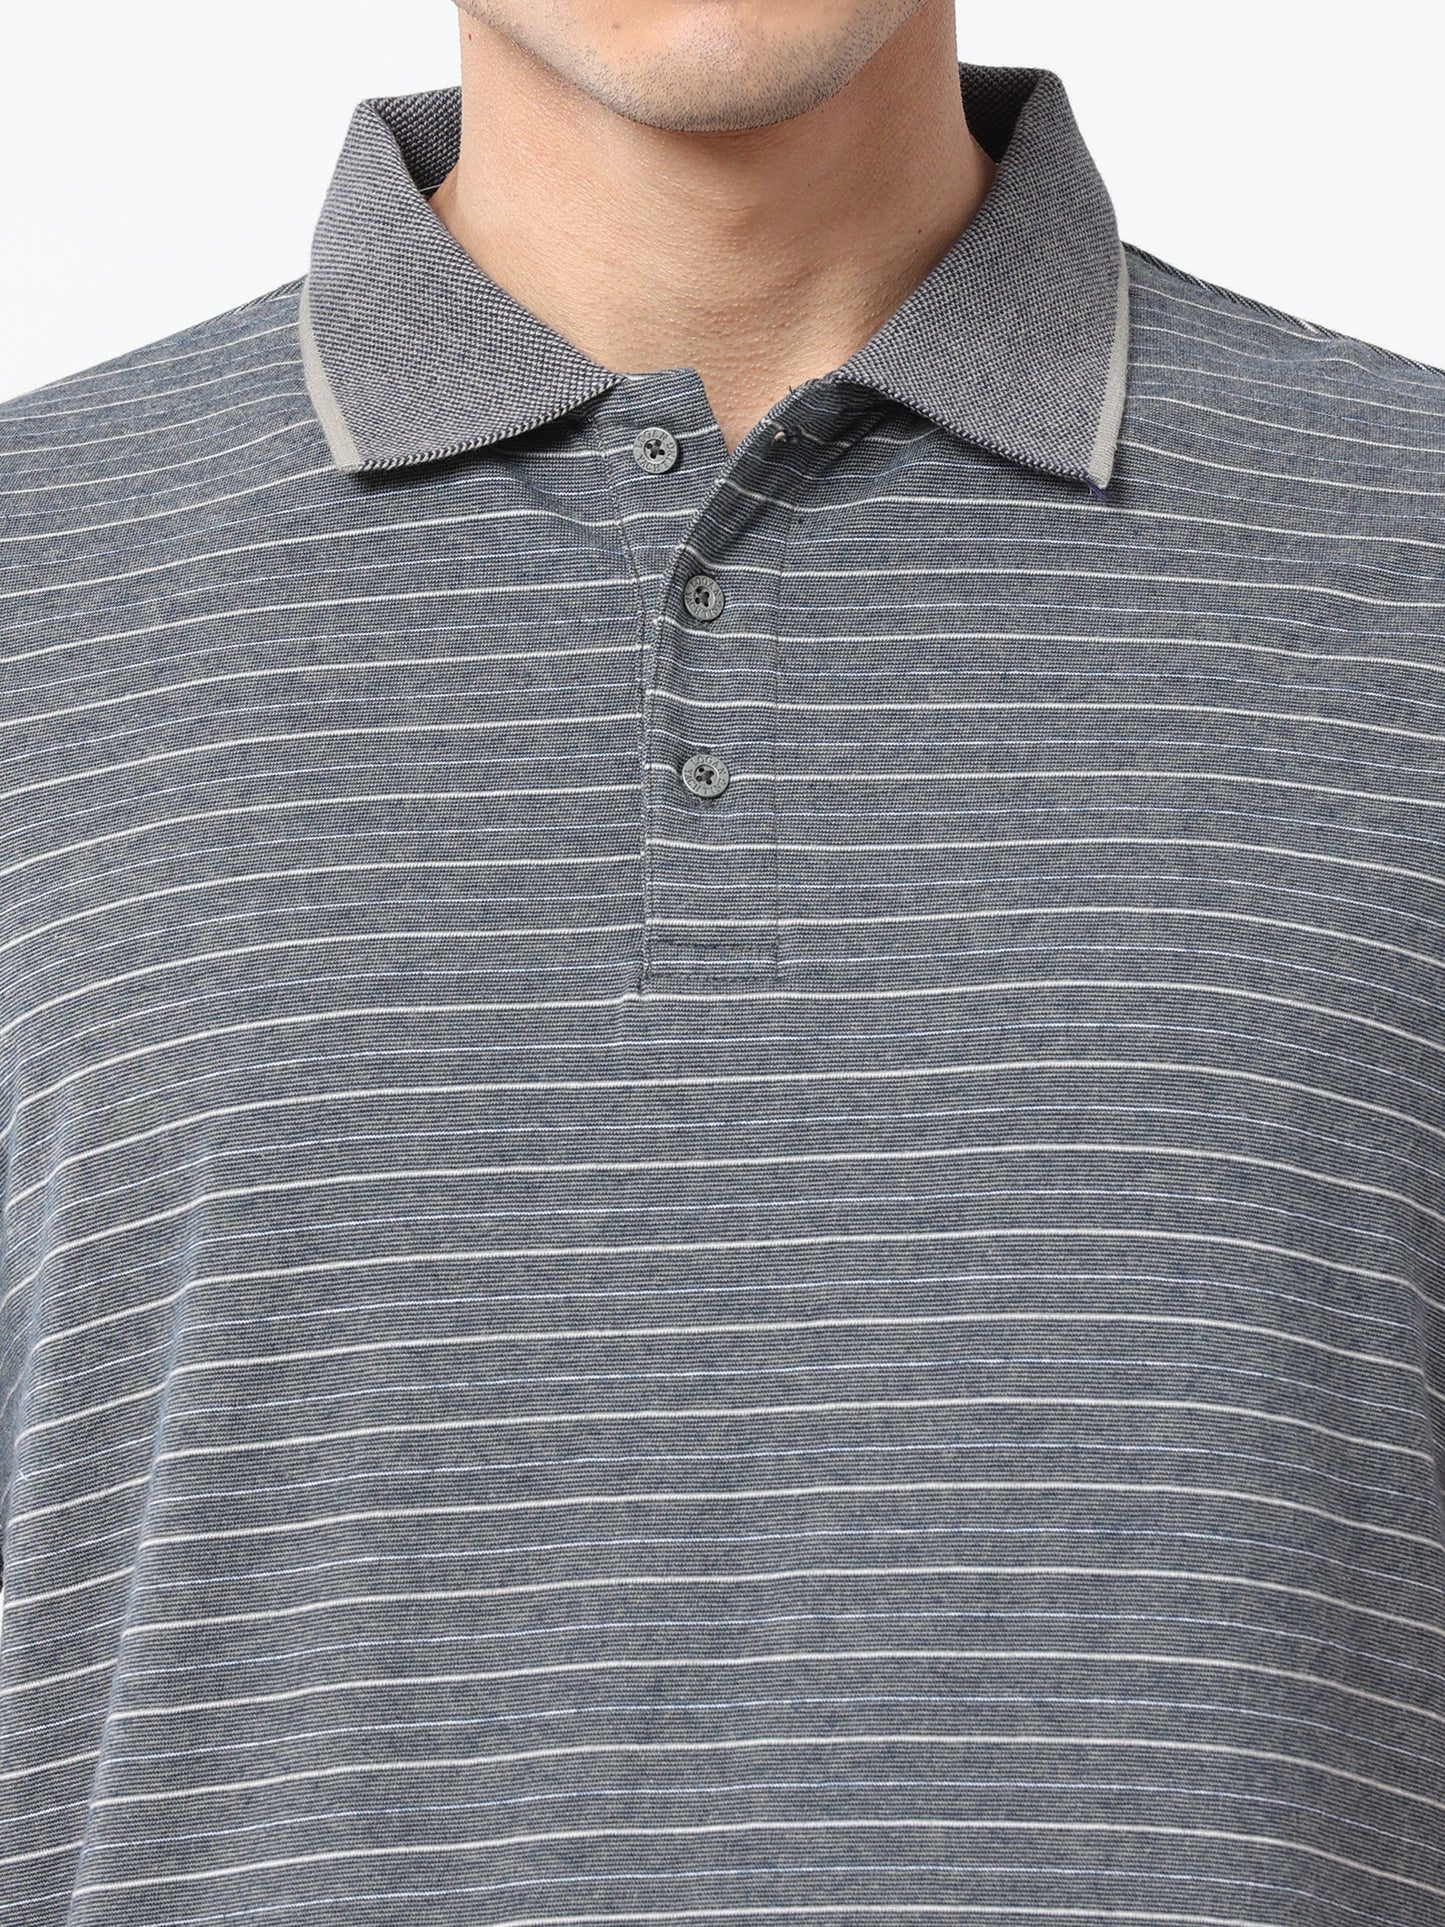 Exclusive- Men's Premium Collar T-Shirt